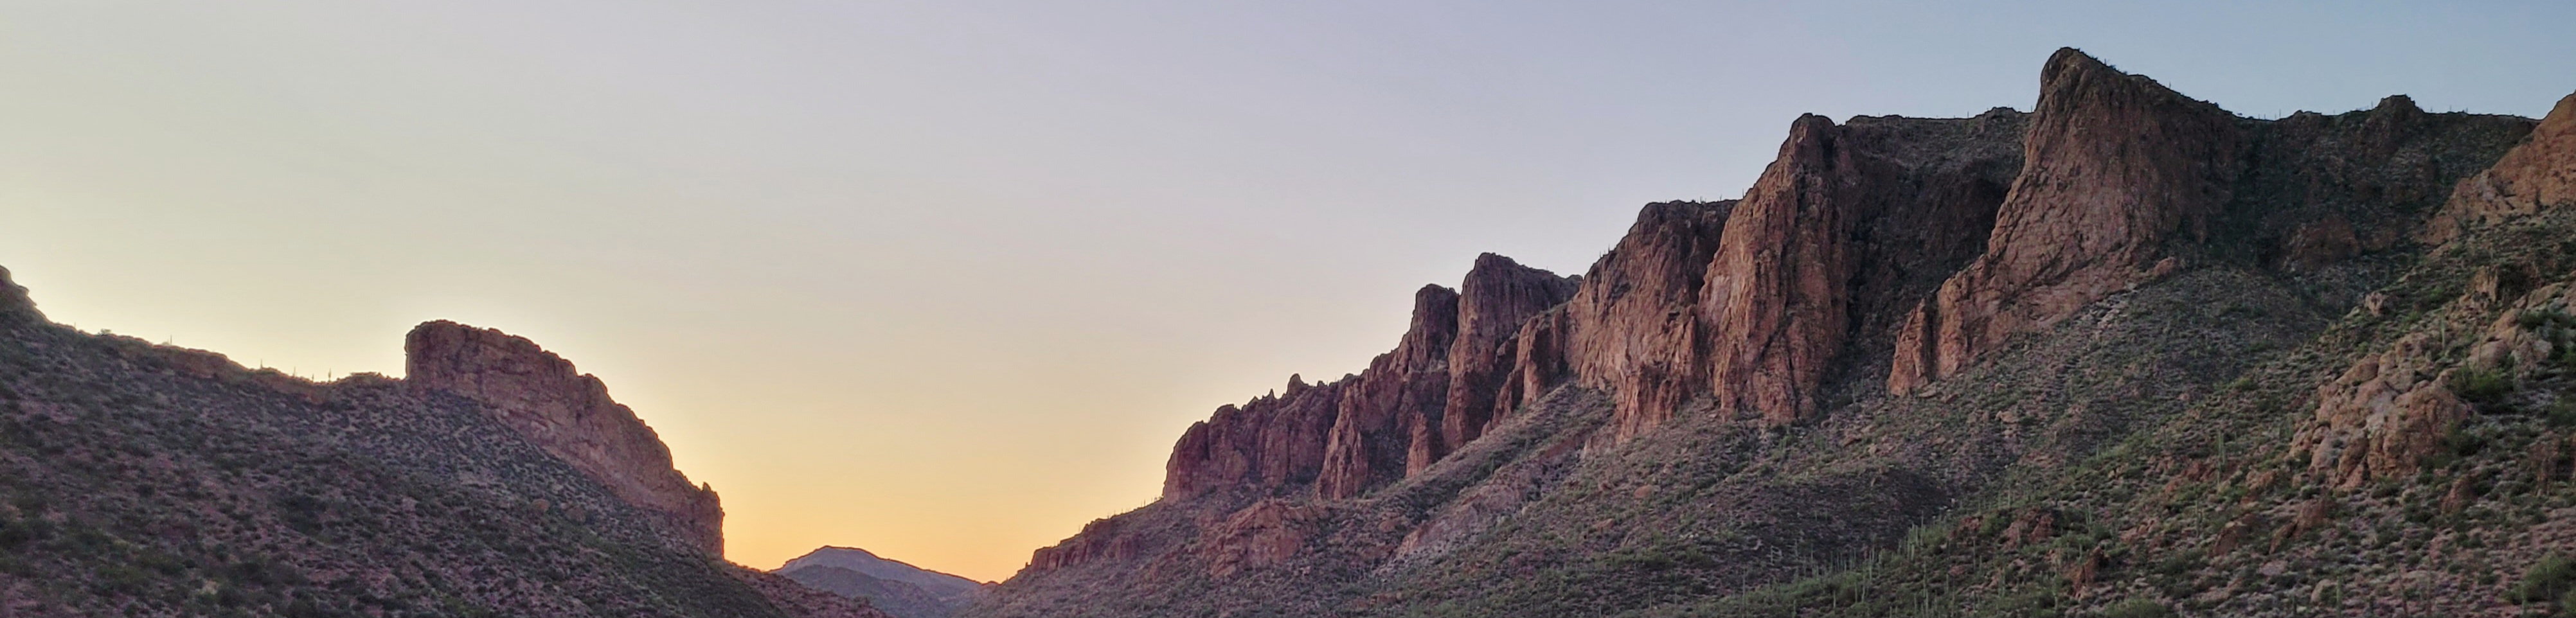 a banner image of a desert landscape at sunset